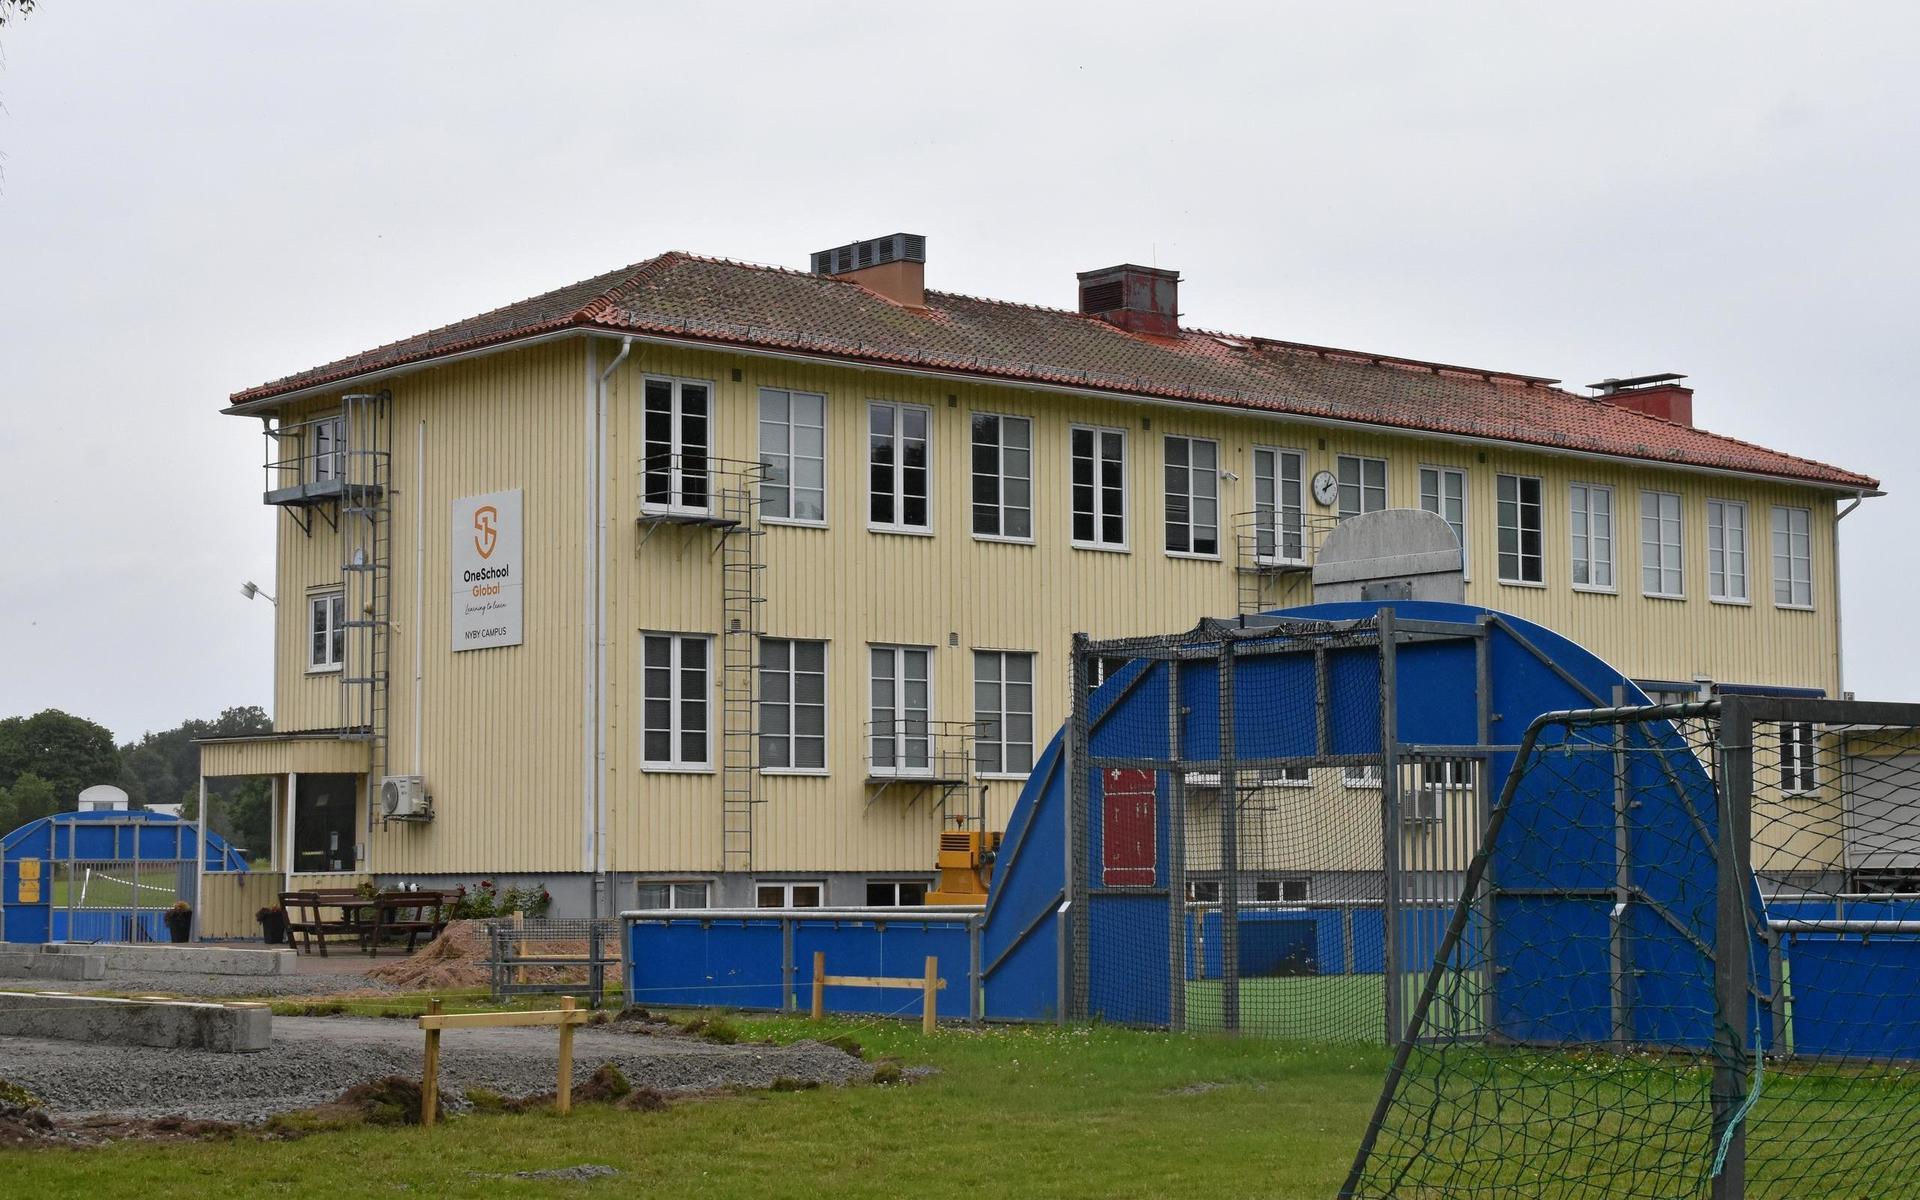 Före detta Laboraskolan, friskolan som drivs av medlemmar från Plymouthbröderna, bygger till.